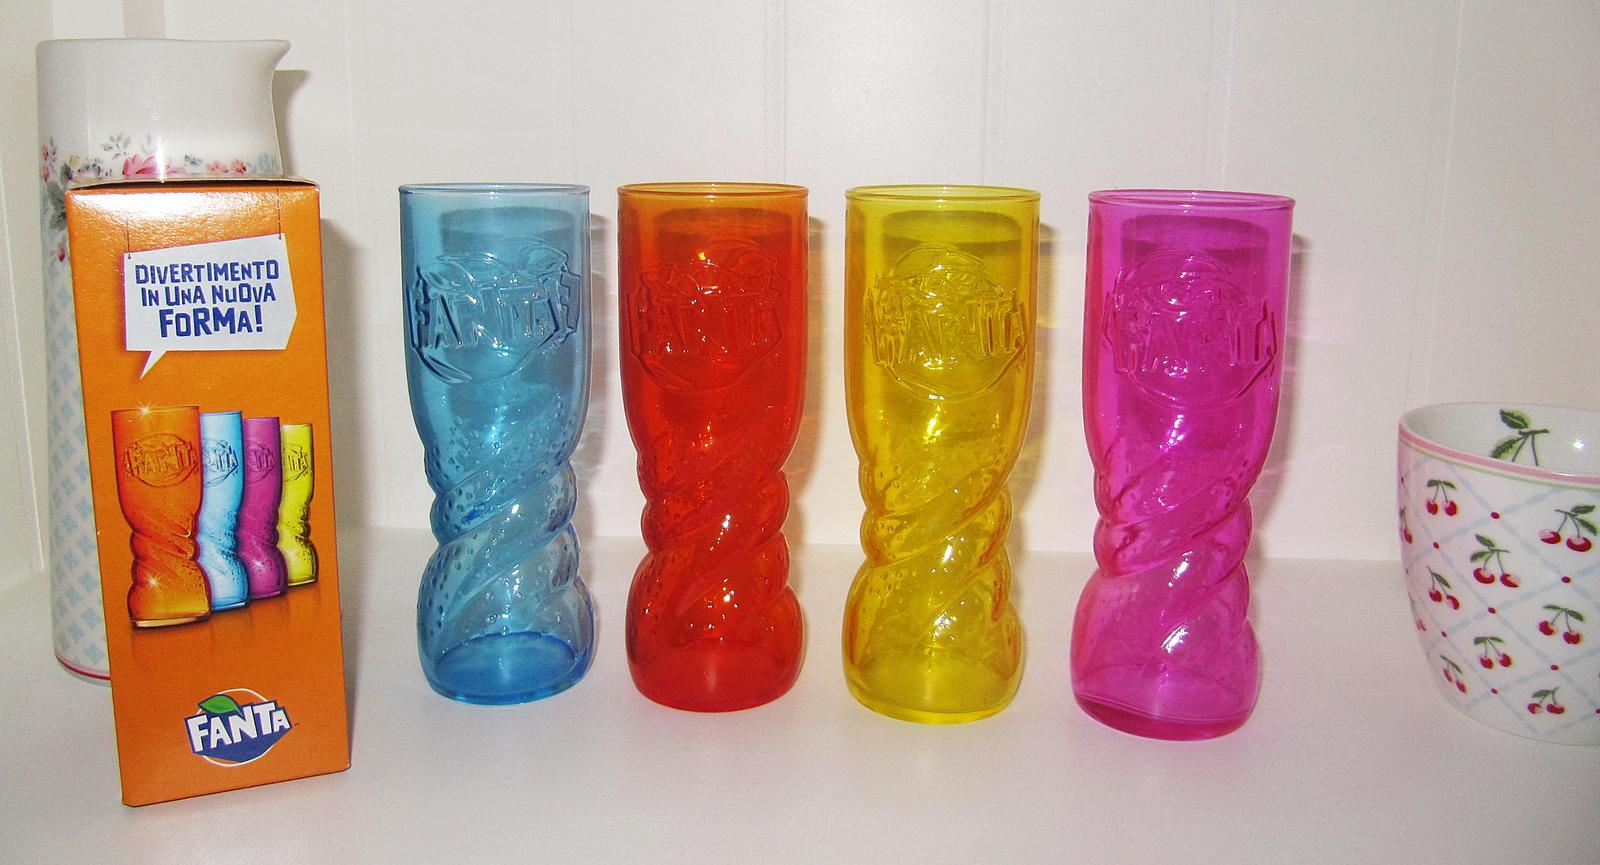 Farebné poháre Fanta - sada 4 kusy, sklo - Obrázok č. 1